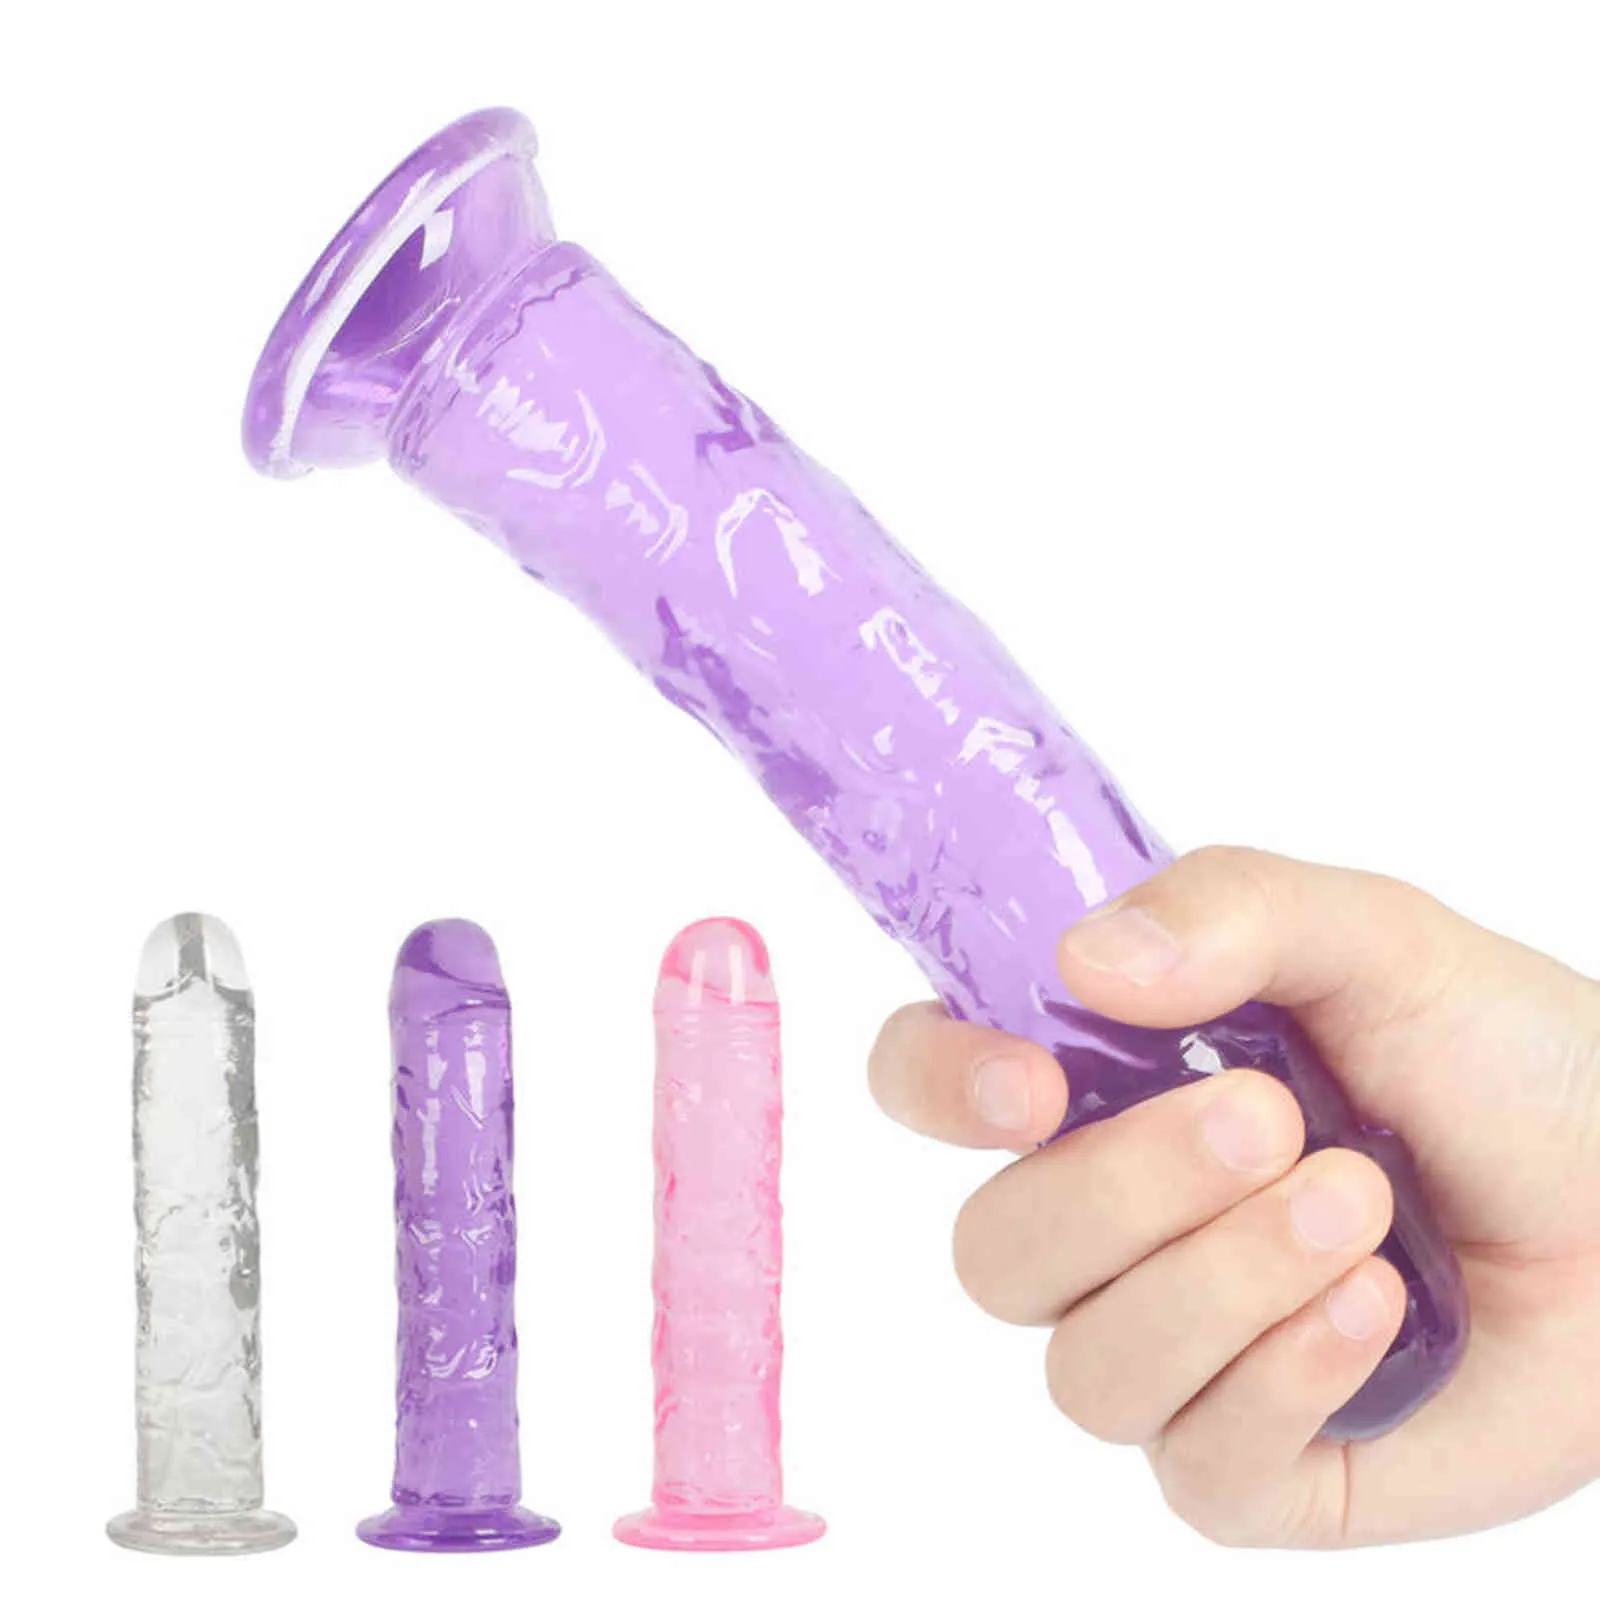 Nxydildos erotisk mjuk gelé dildo anal butt plug realistisk penis stark sugkopp kuk leksak för vuxen g-spot orgasm sexleksaker kvinna 1126